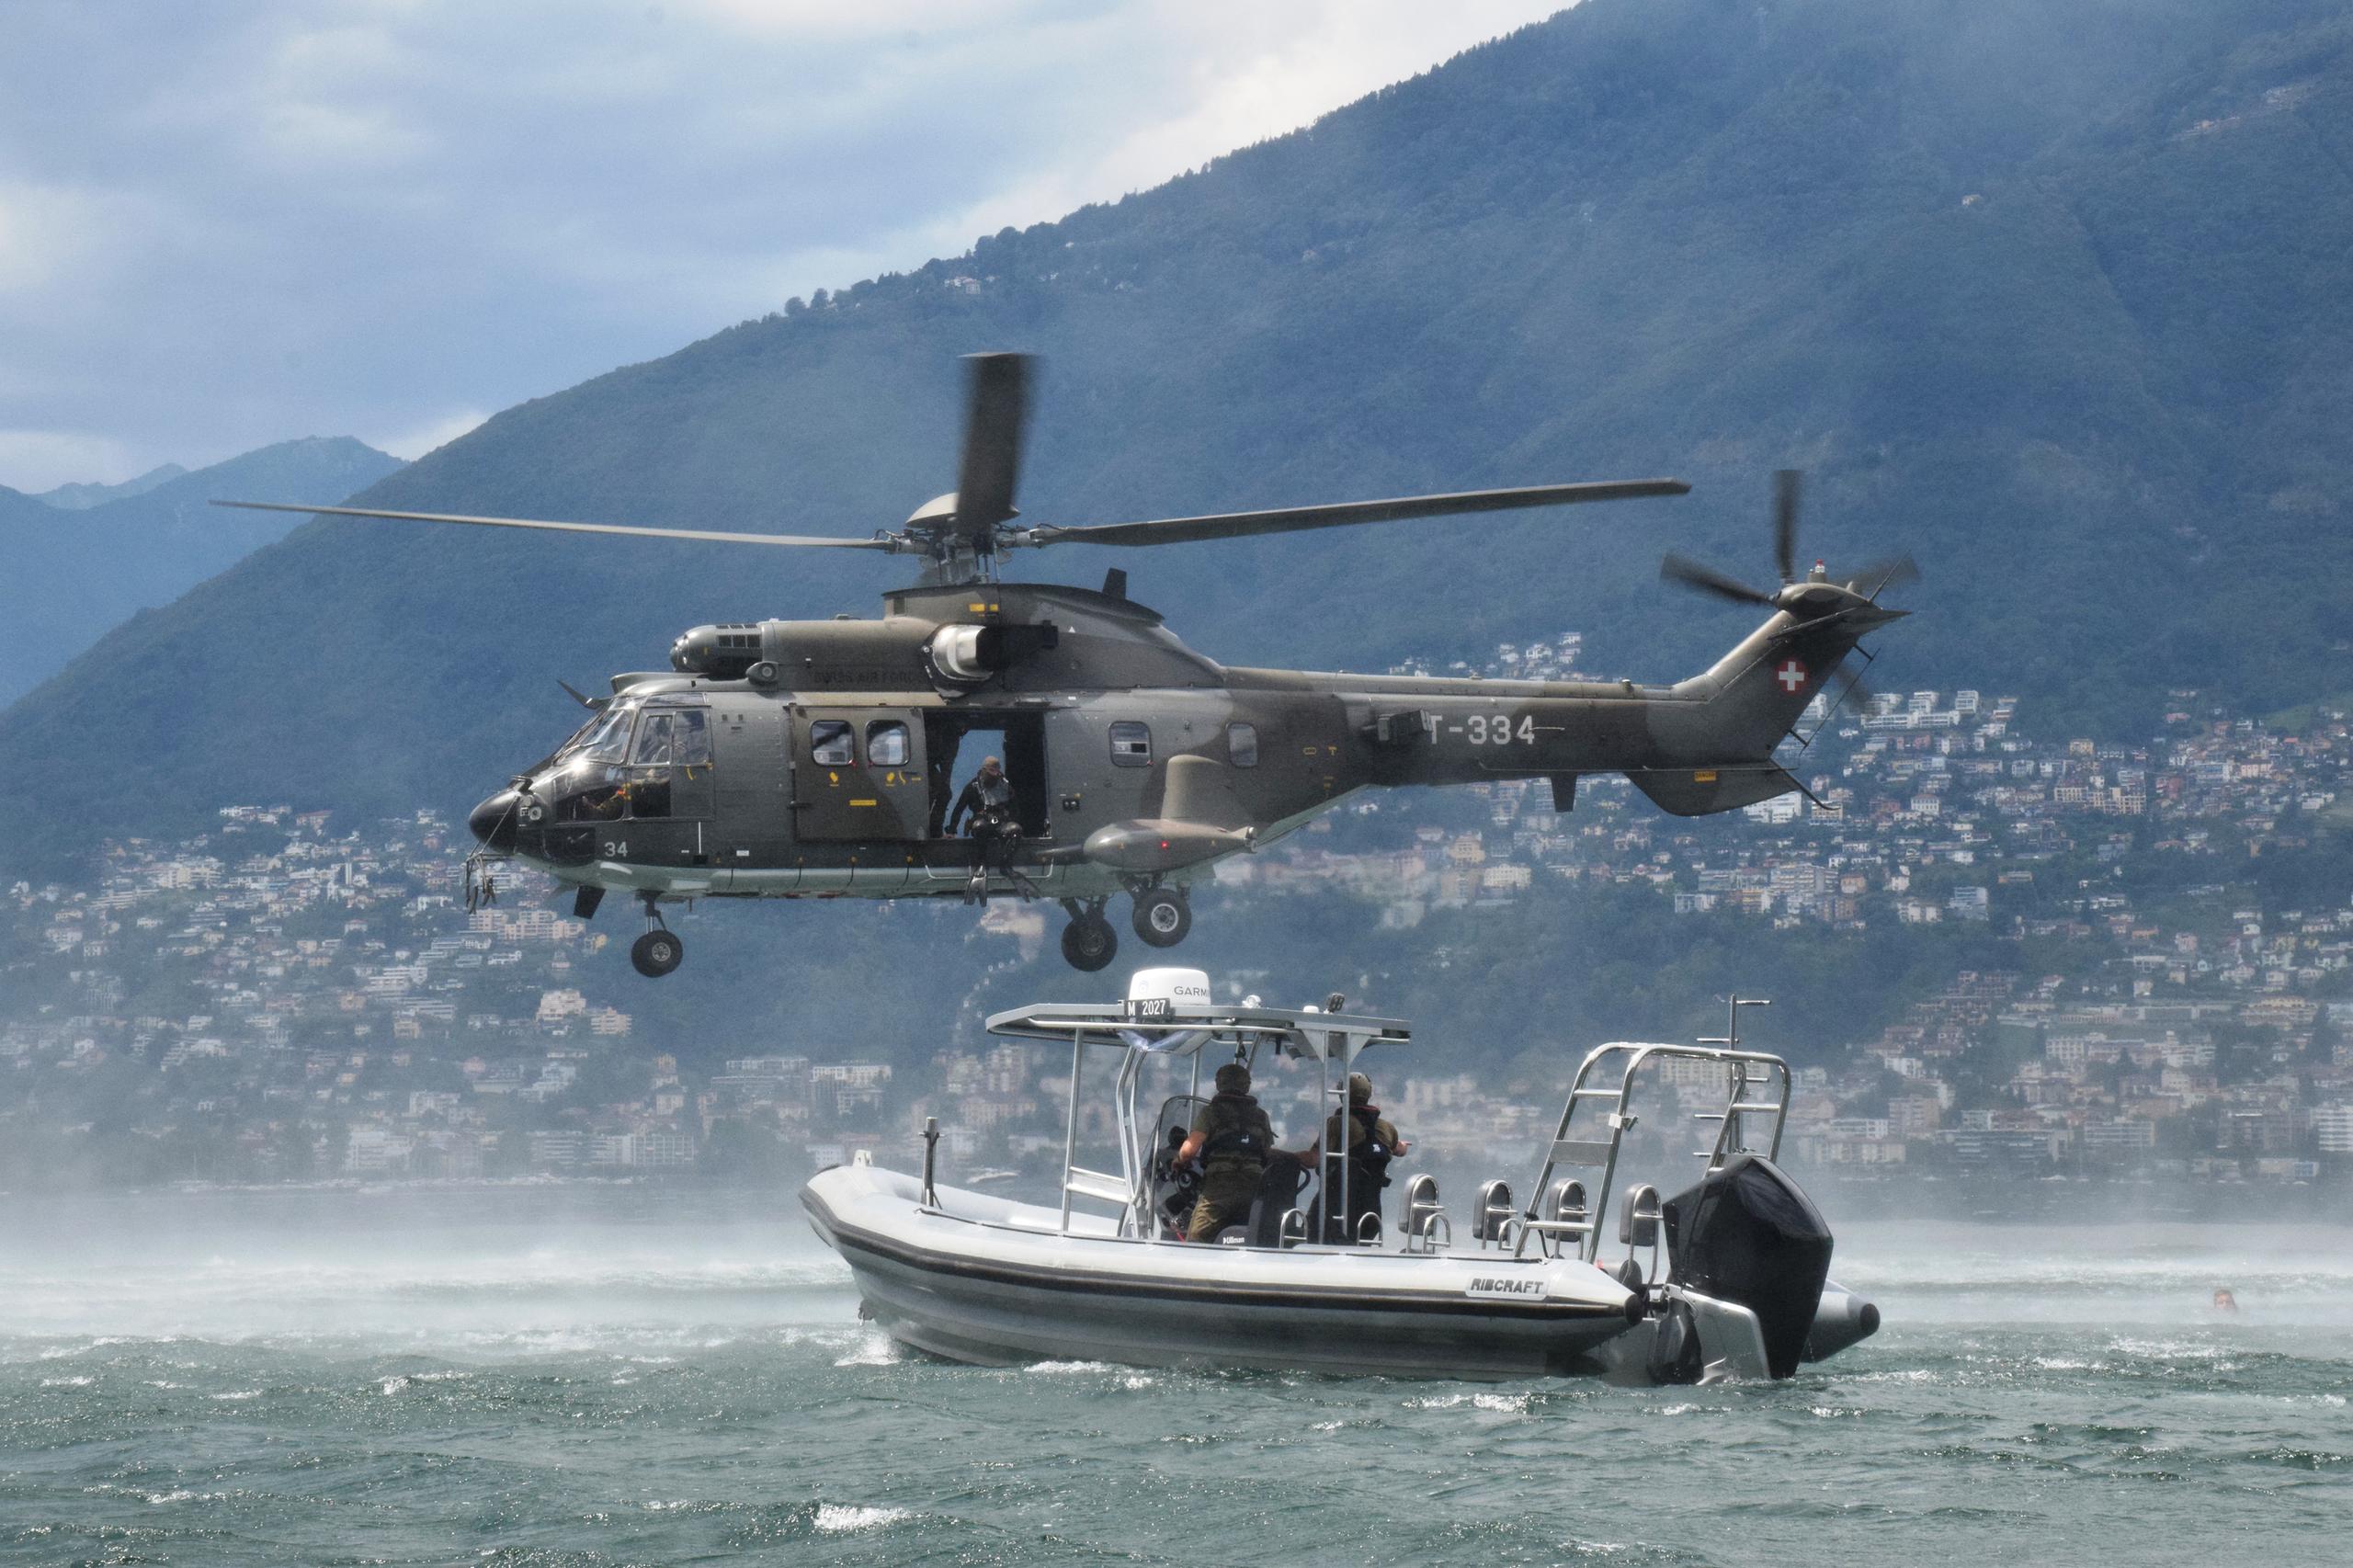 وحدة العمليات الخاصة التابعة للجيش السويسري (AAD10) خلال دورة تدريبية تسمى البرمائيات في بحيرة لوكارنو.